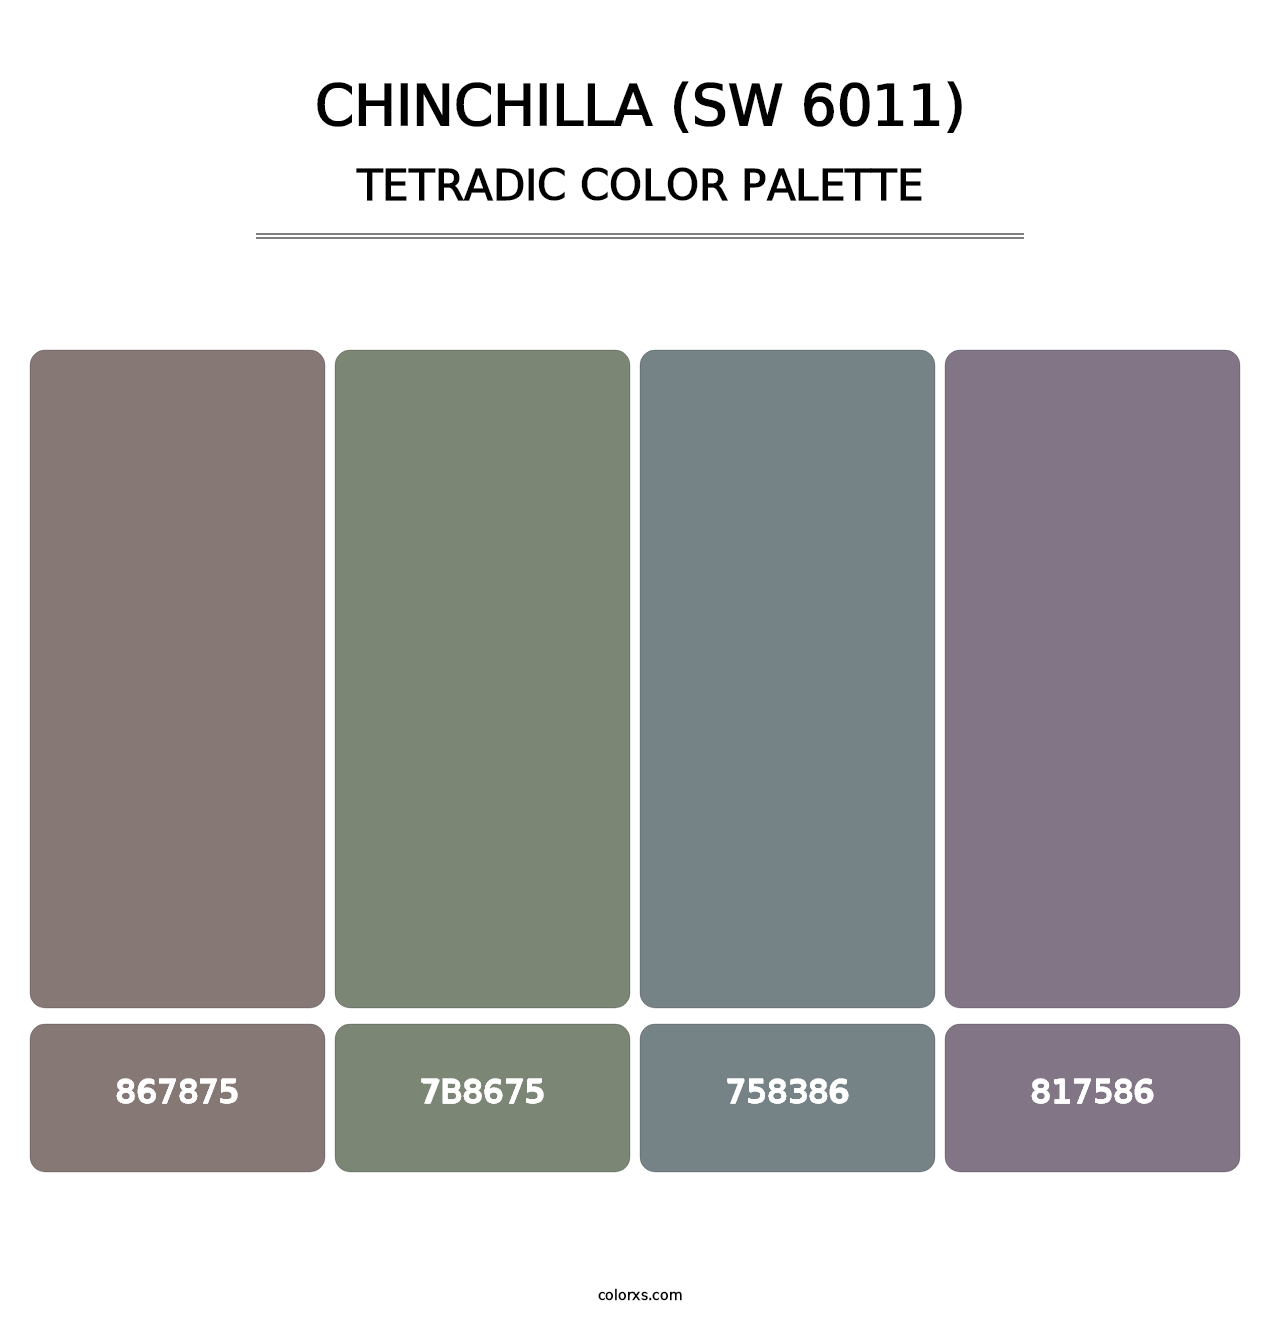 Chinchilla (SW 6011) - Tetradic Color Palette